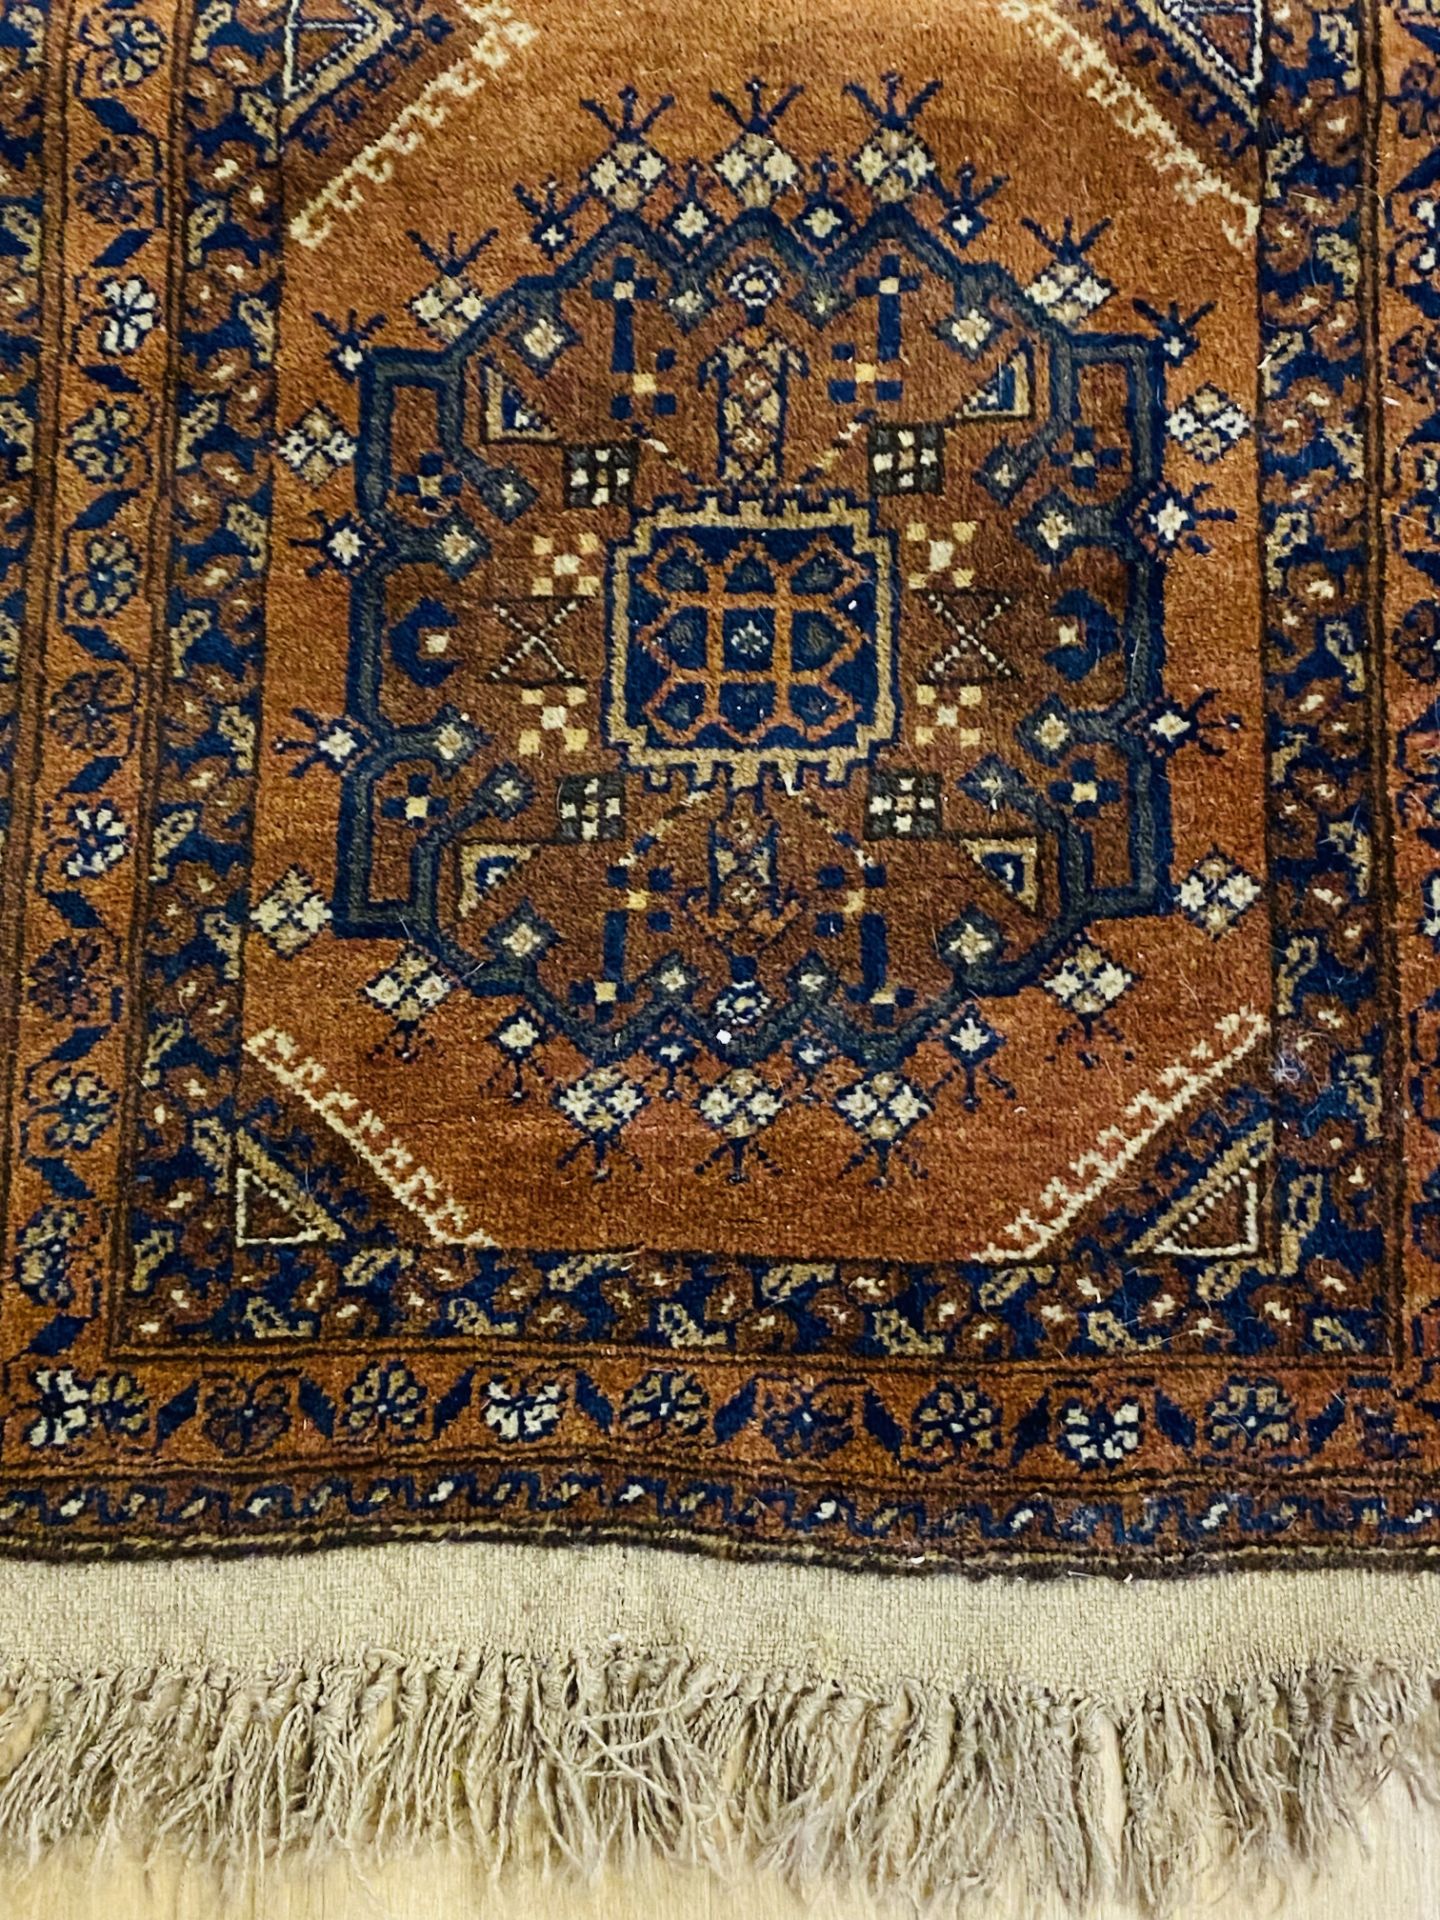 Brown ground Afghan rug - Image 3 of 3